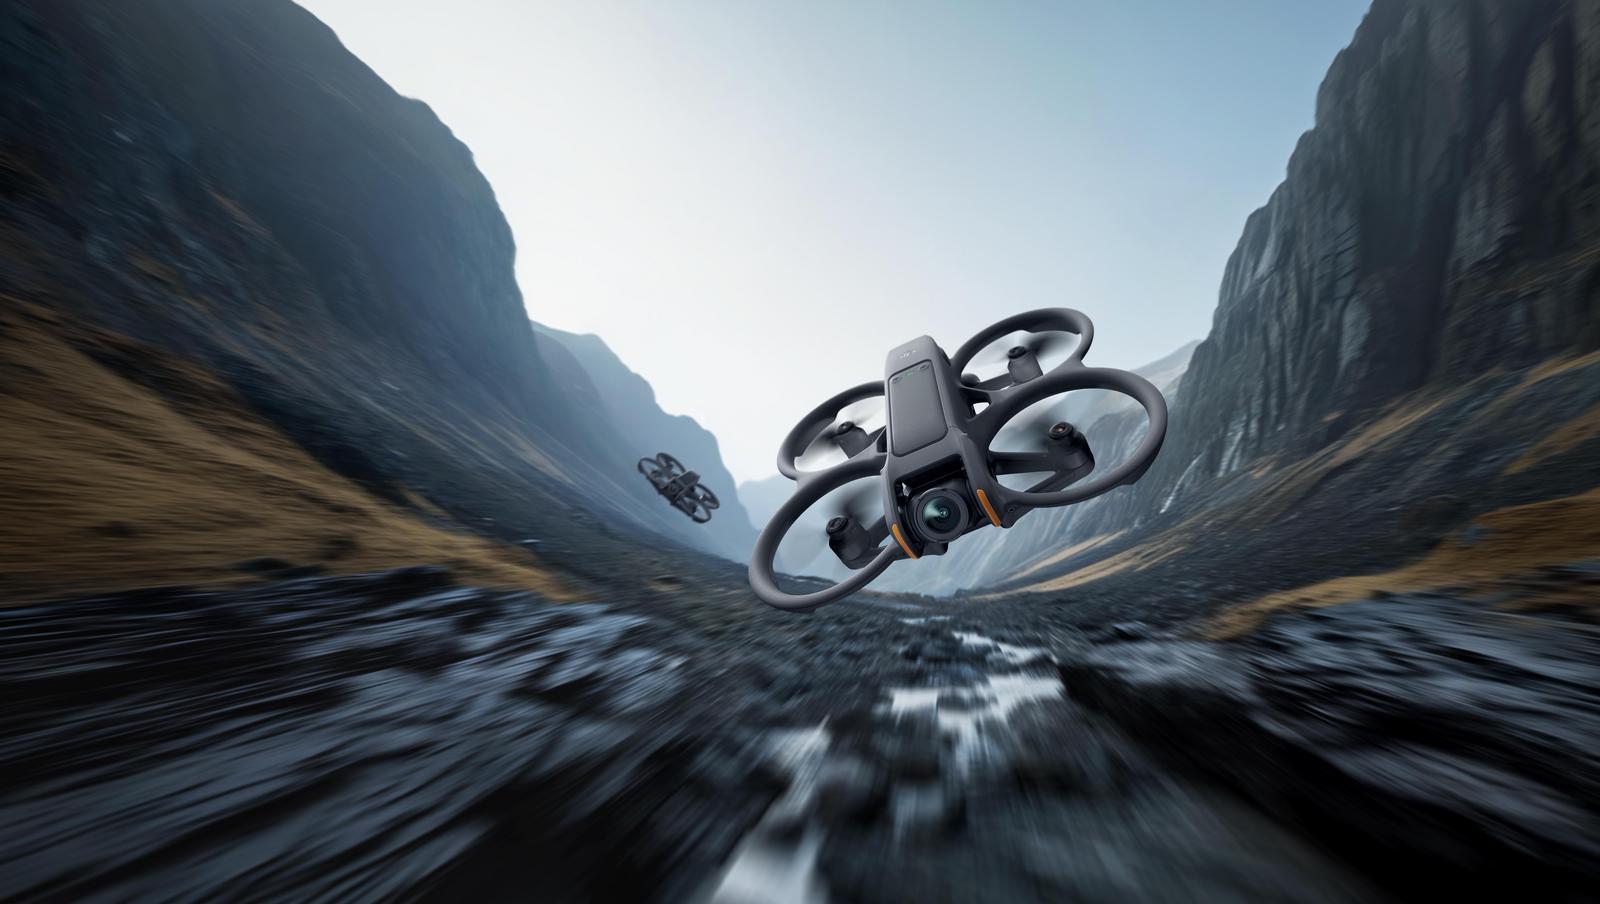 大疆发布全新第一视角飞行体验无人机DJI Avata 2及新一代飞行眼镜 3、穿越摇杆 3